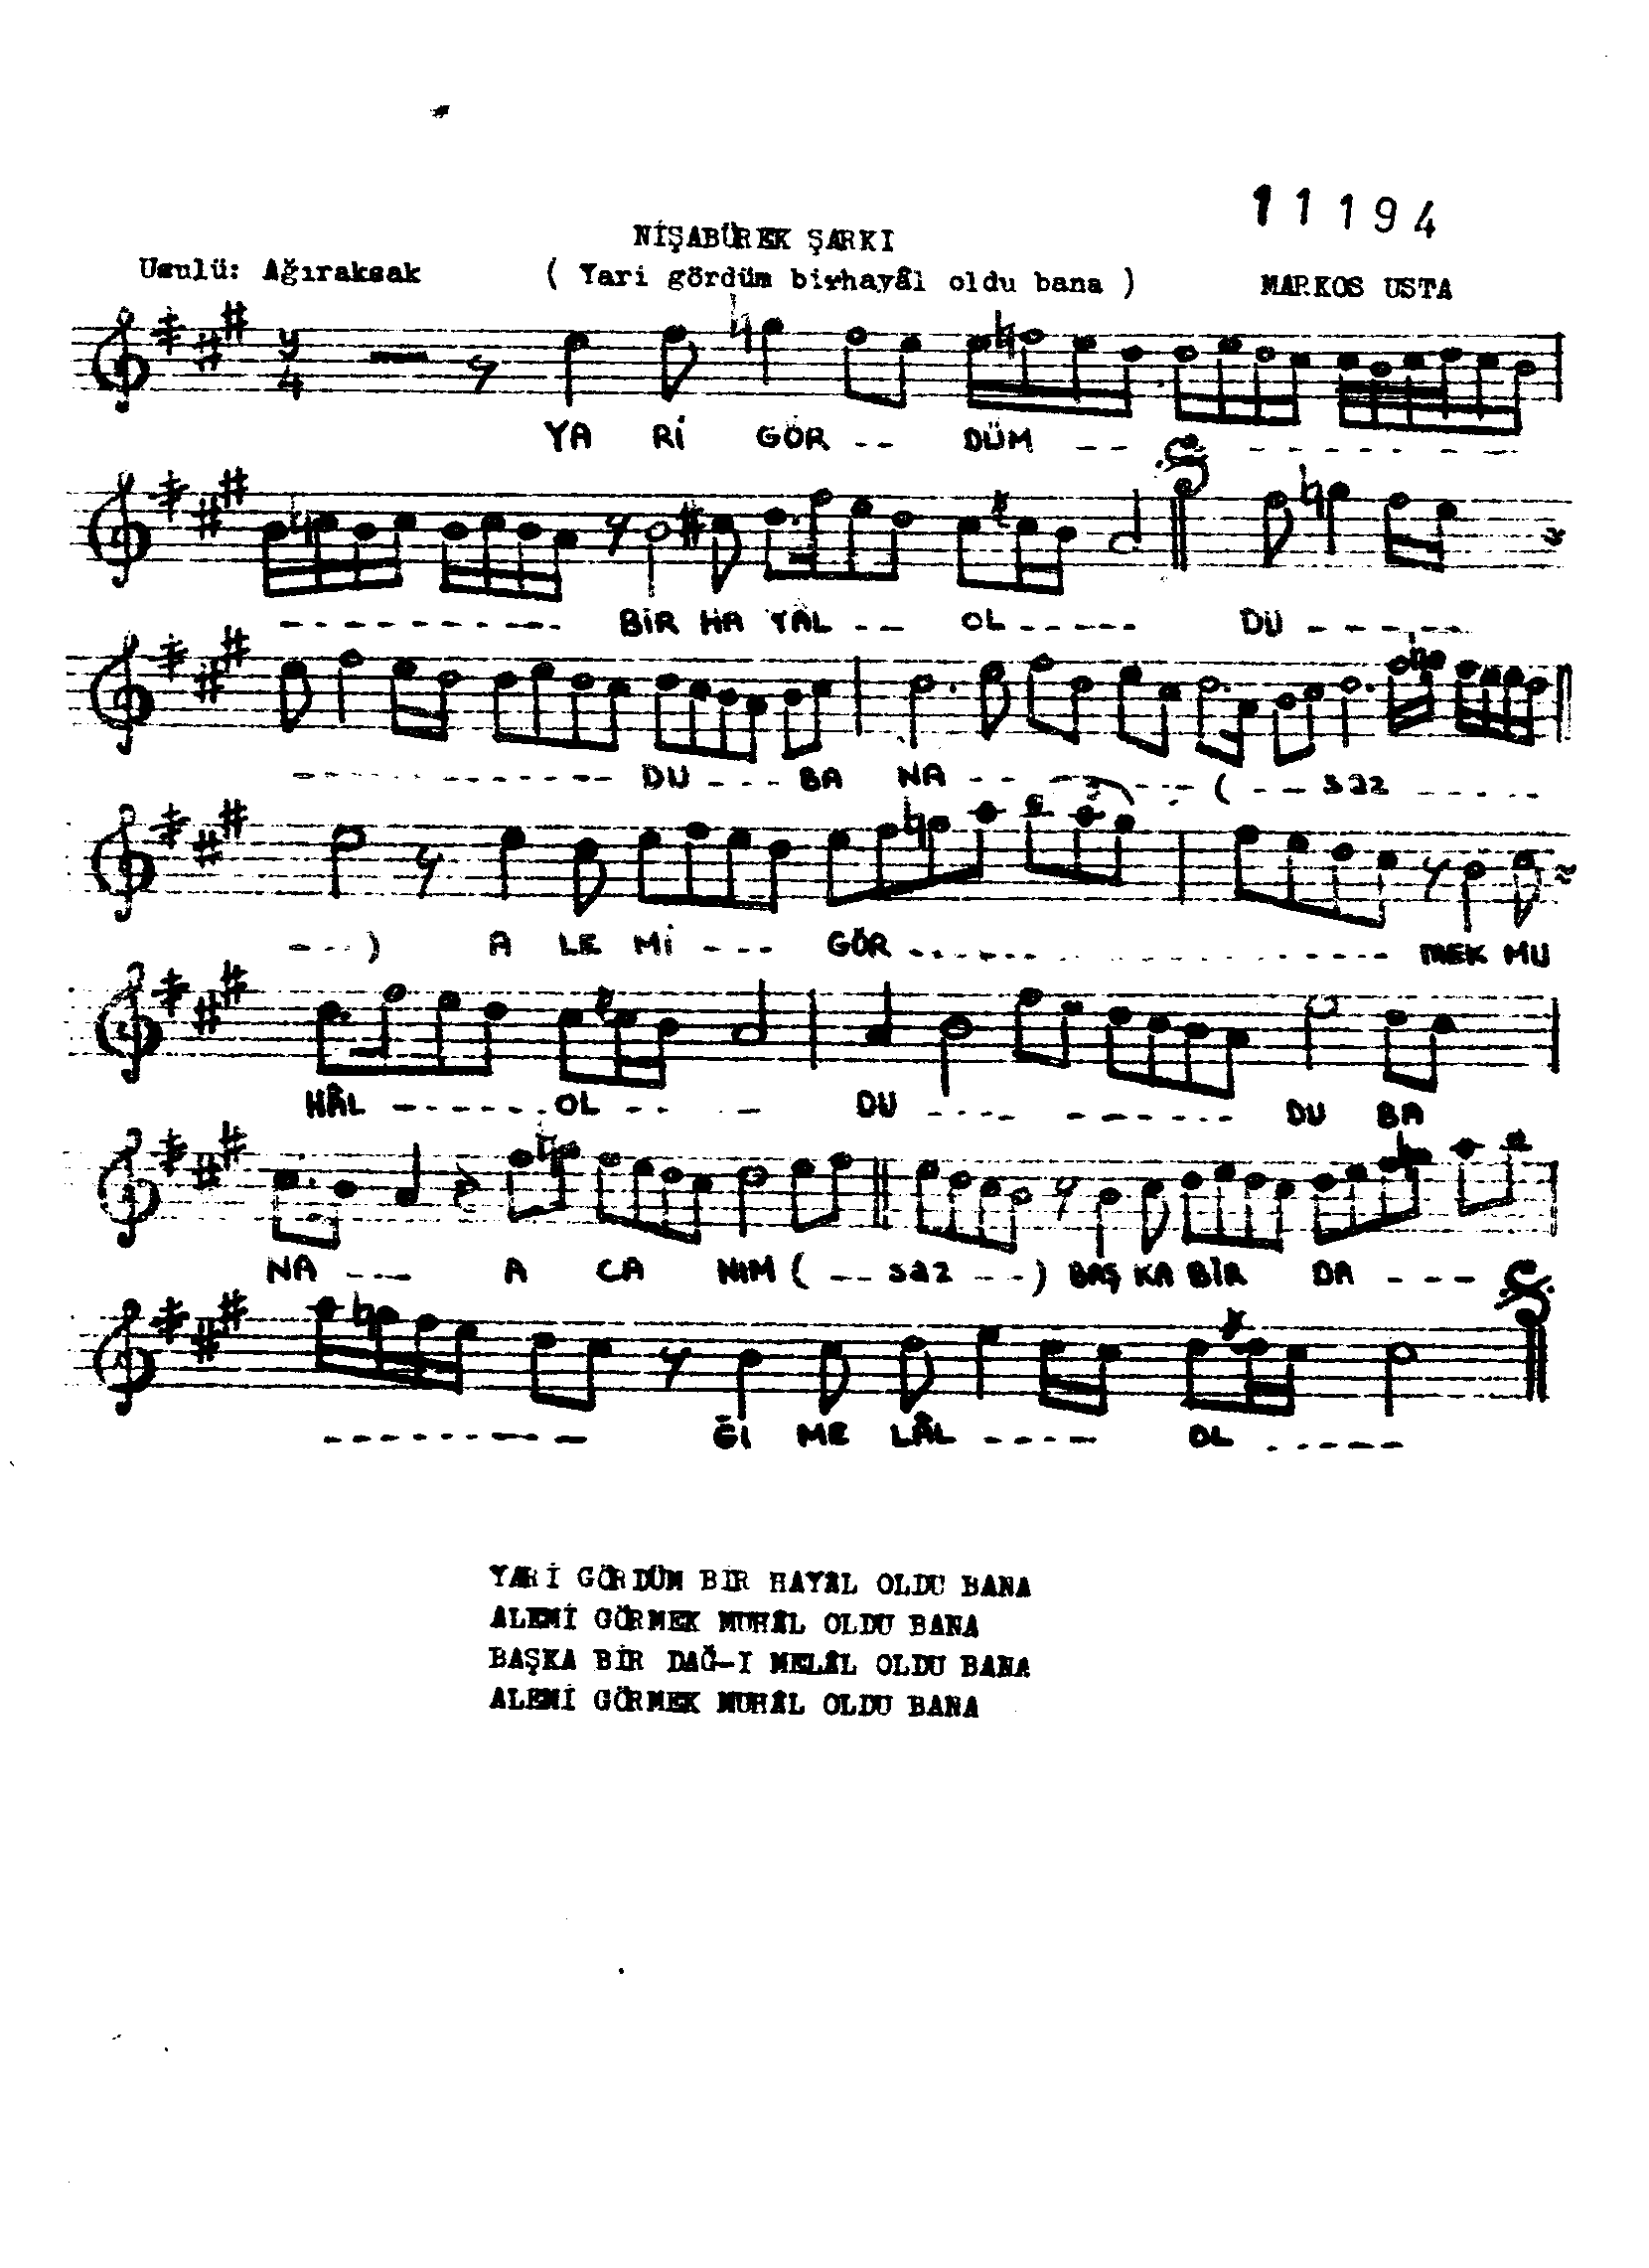 Nişâbûrek - Şarkı - Markar Ağa - Sayfa 1